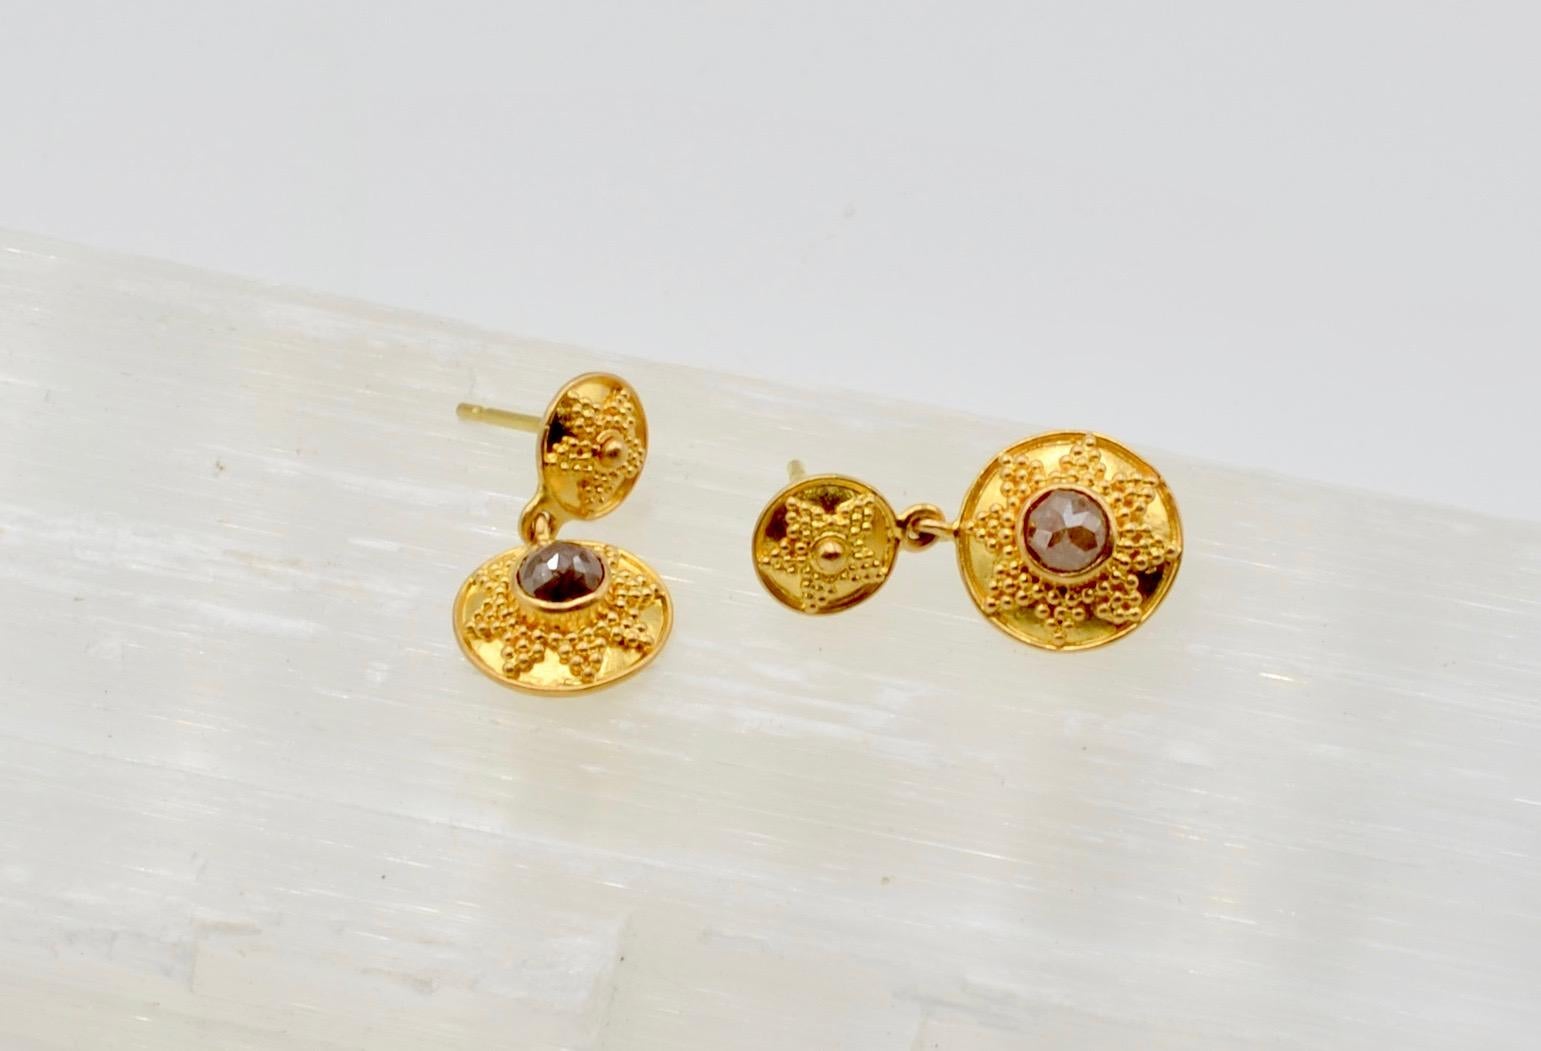 Diese von Steven Battelle entworfenen Schokoladen-Diamant-Ohrringe (1,1 Karat  gesamtgewicht), gefasst in 22 Karat Gold, sind die perfekte Kombination aus Kontrast und Glanz. Der granulierte byzantinische Stil ist klassisch und passt perfekt zu den